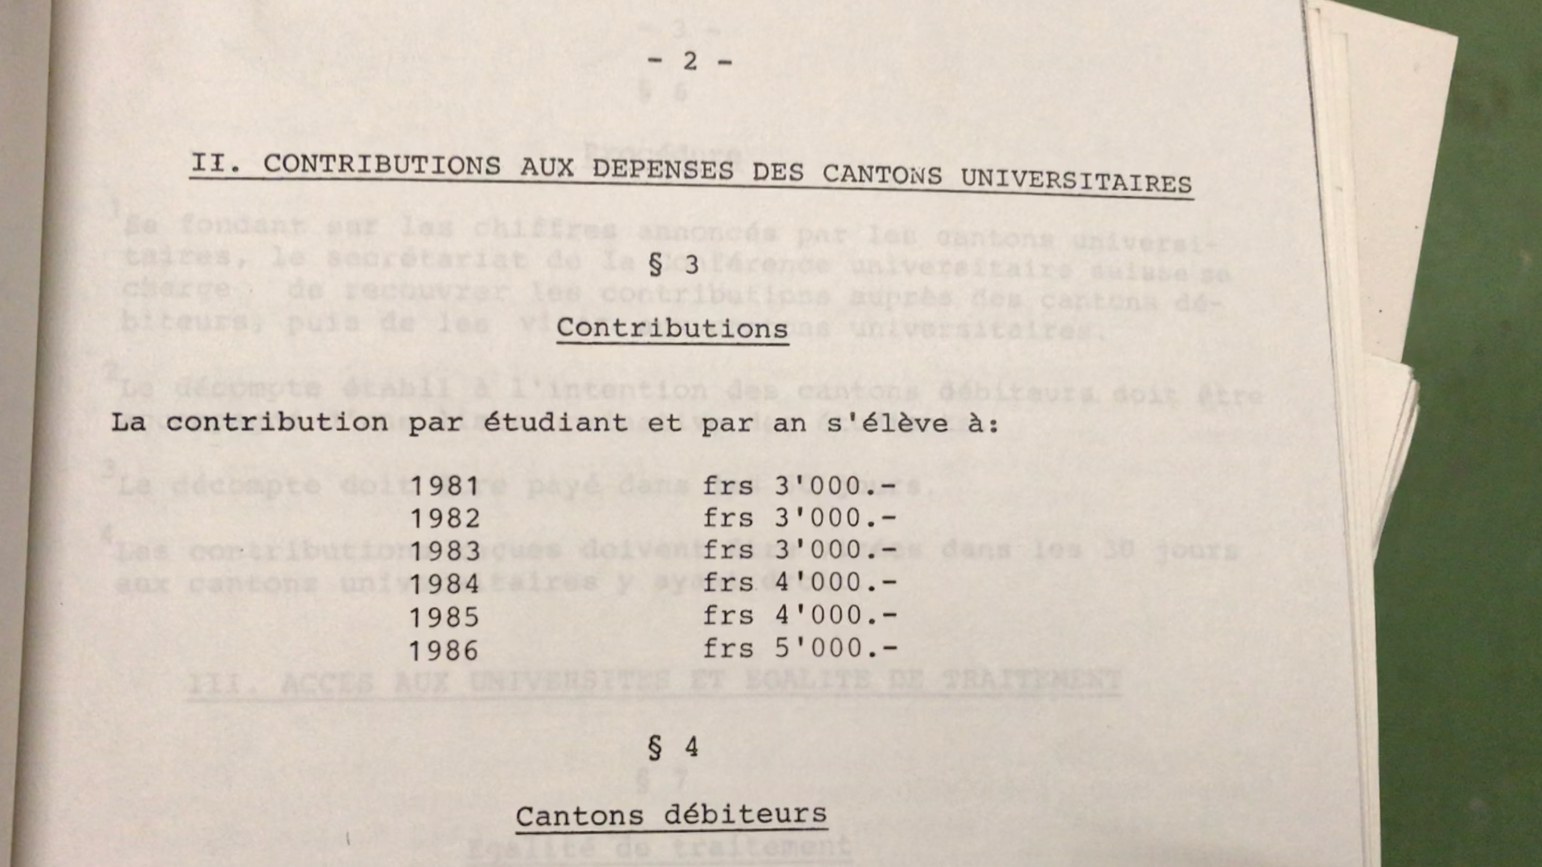 On voit la page deux de l'Accord intercantonal sur la participation au financement des universités de 1979 avec le paragraphe concernant les contributions